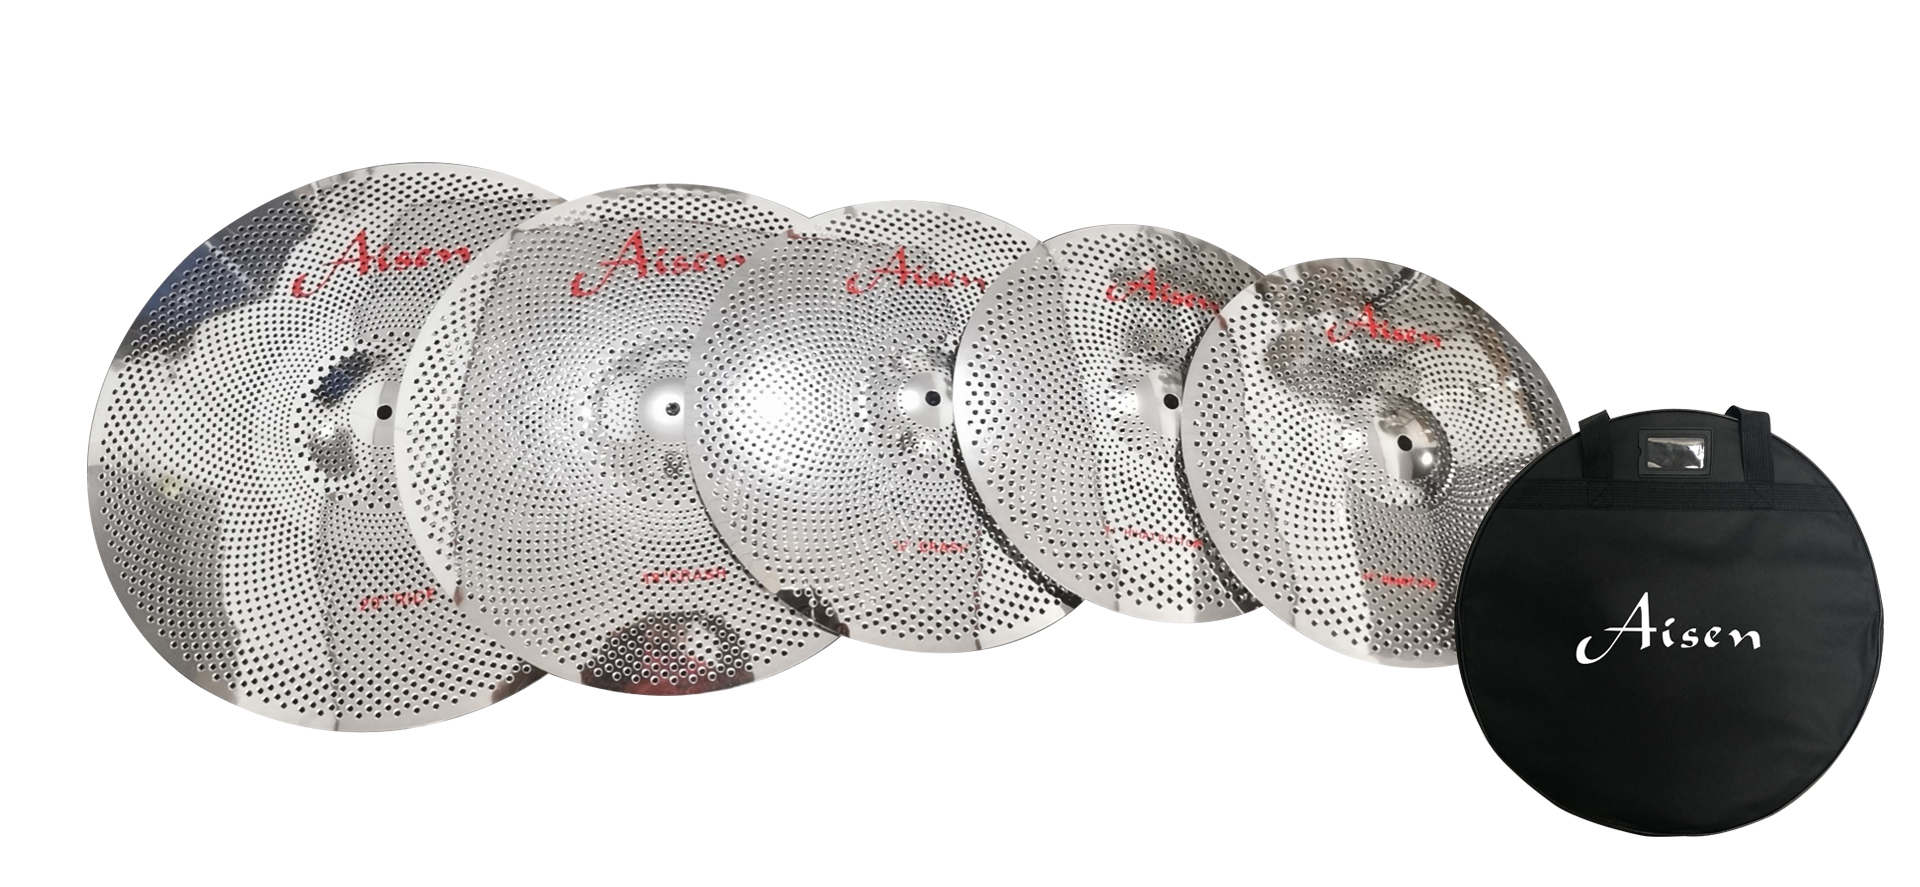 Тарелки, барабаны для ударных установок AISEN LOW VOLUME SILVER CYMBAL PACK тарелки барабаны для ударных установок istanbul agop 14 ms x hi hats